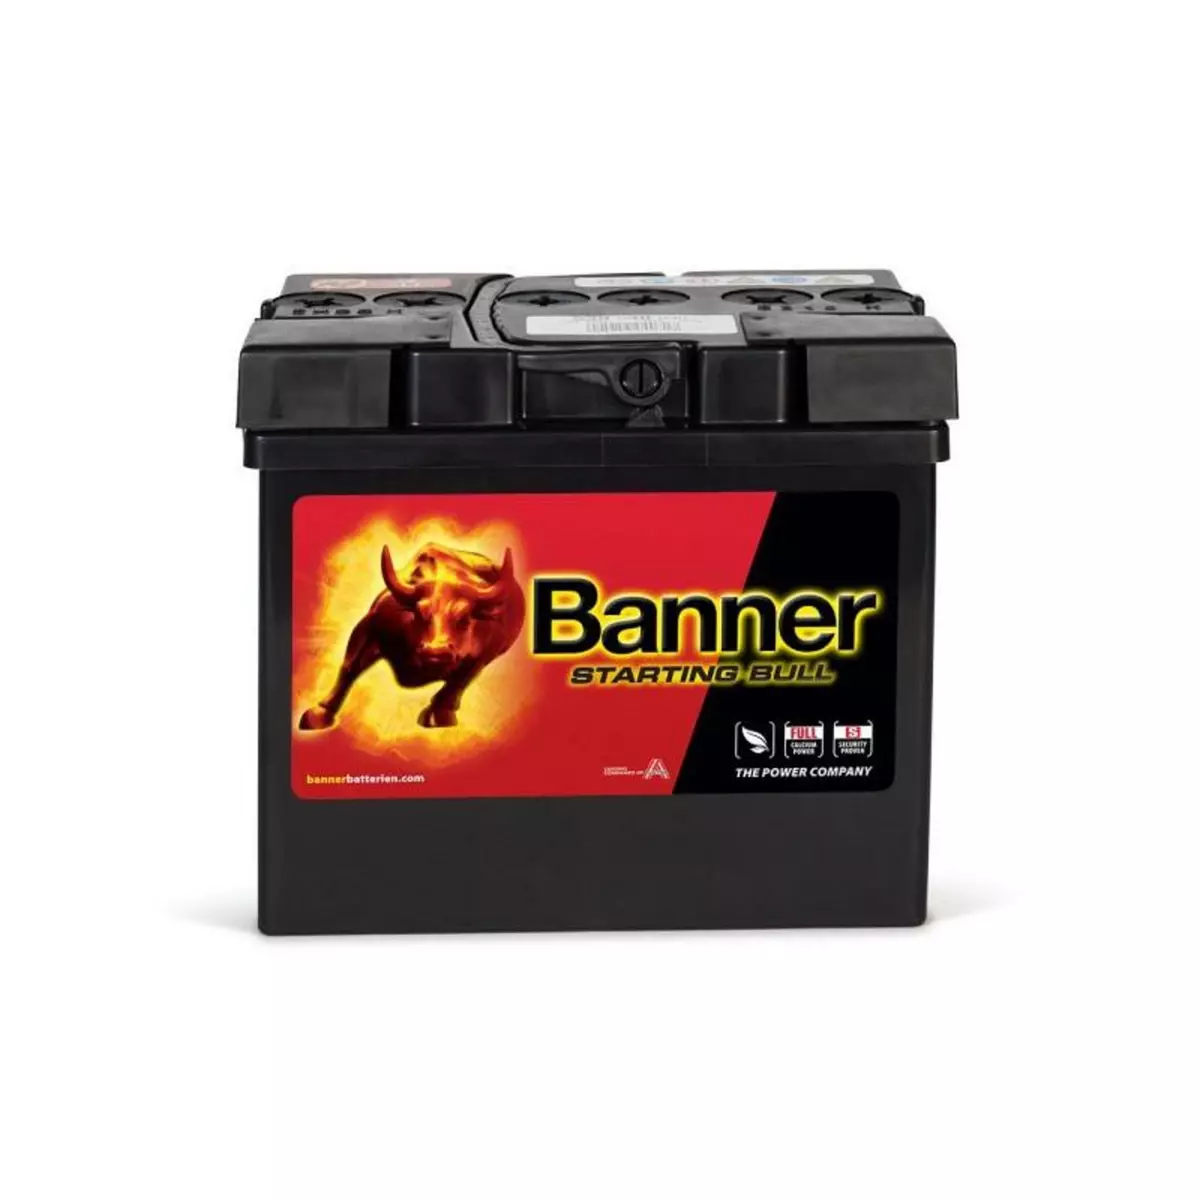 BANNER Batterie Starting Bull Banner 53030 12v 30ah 300A